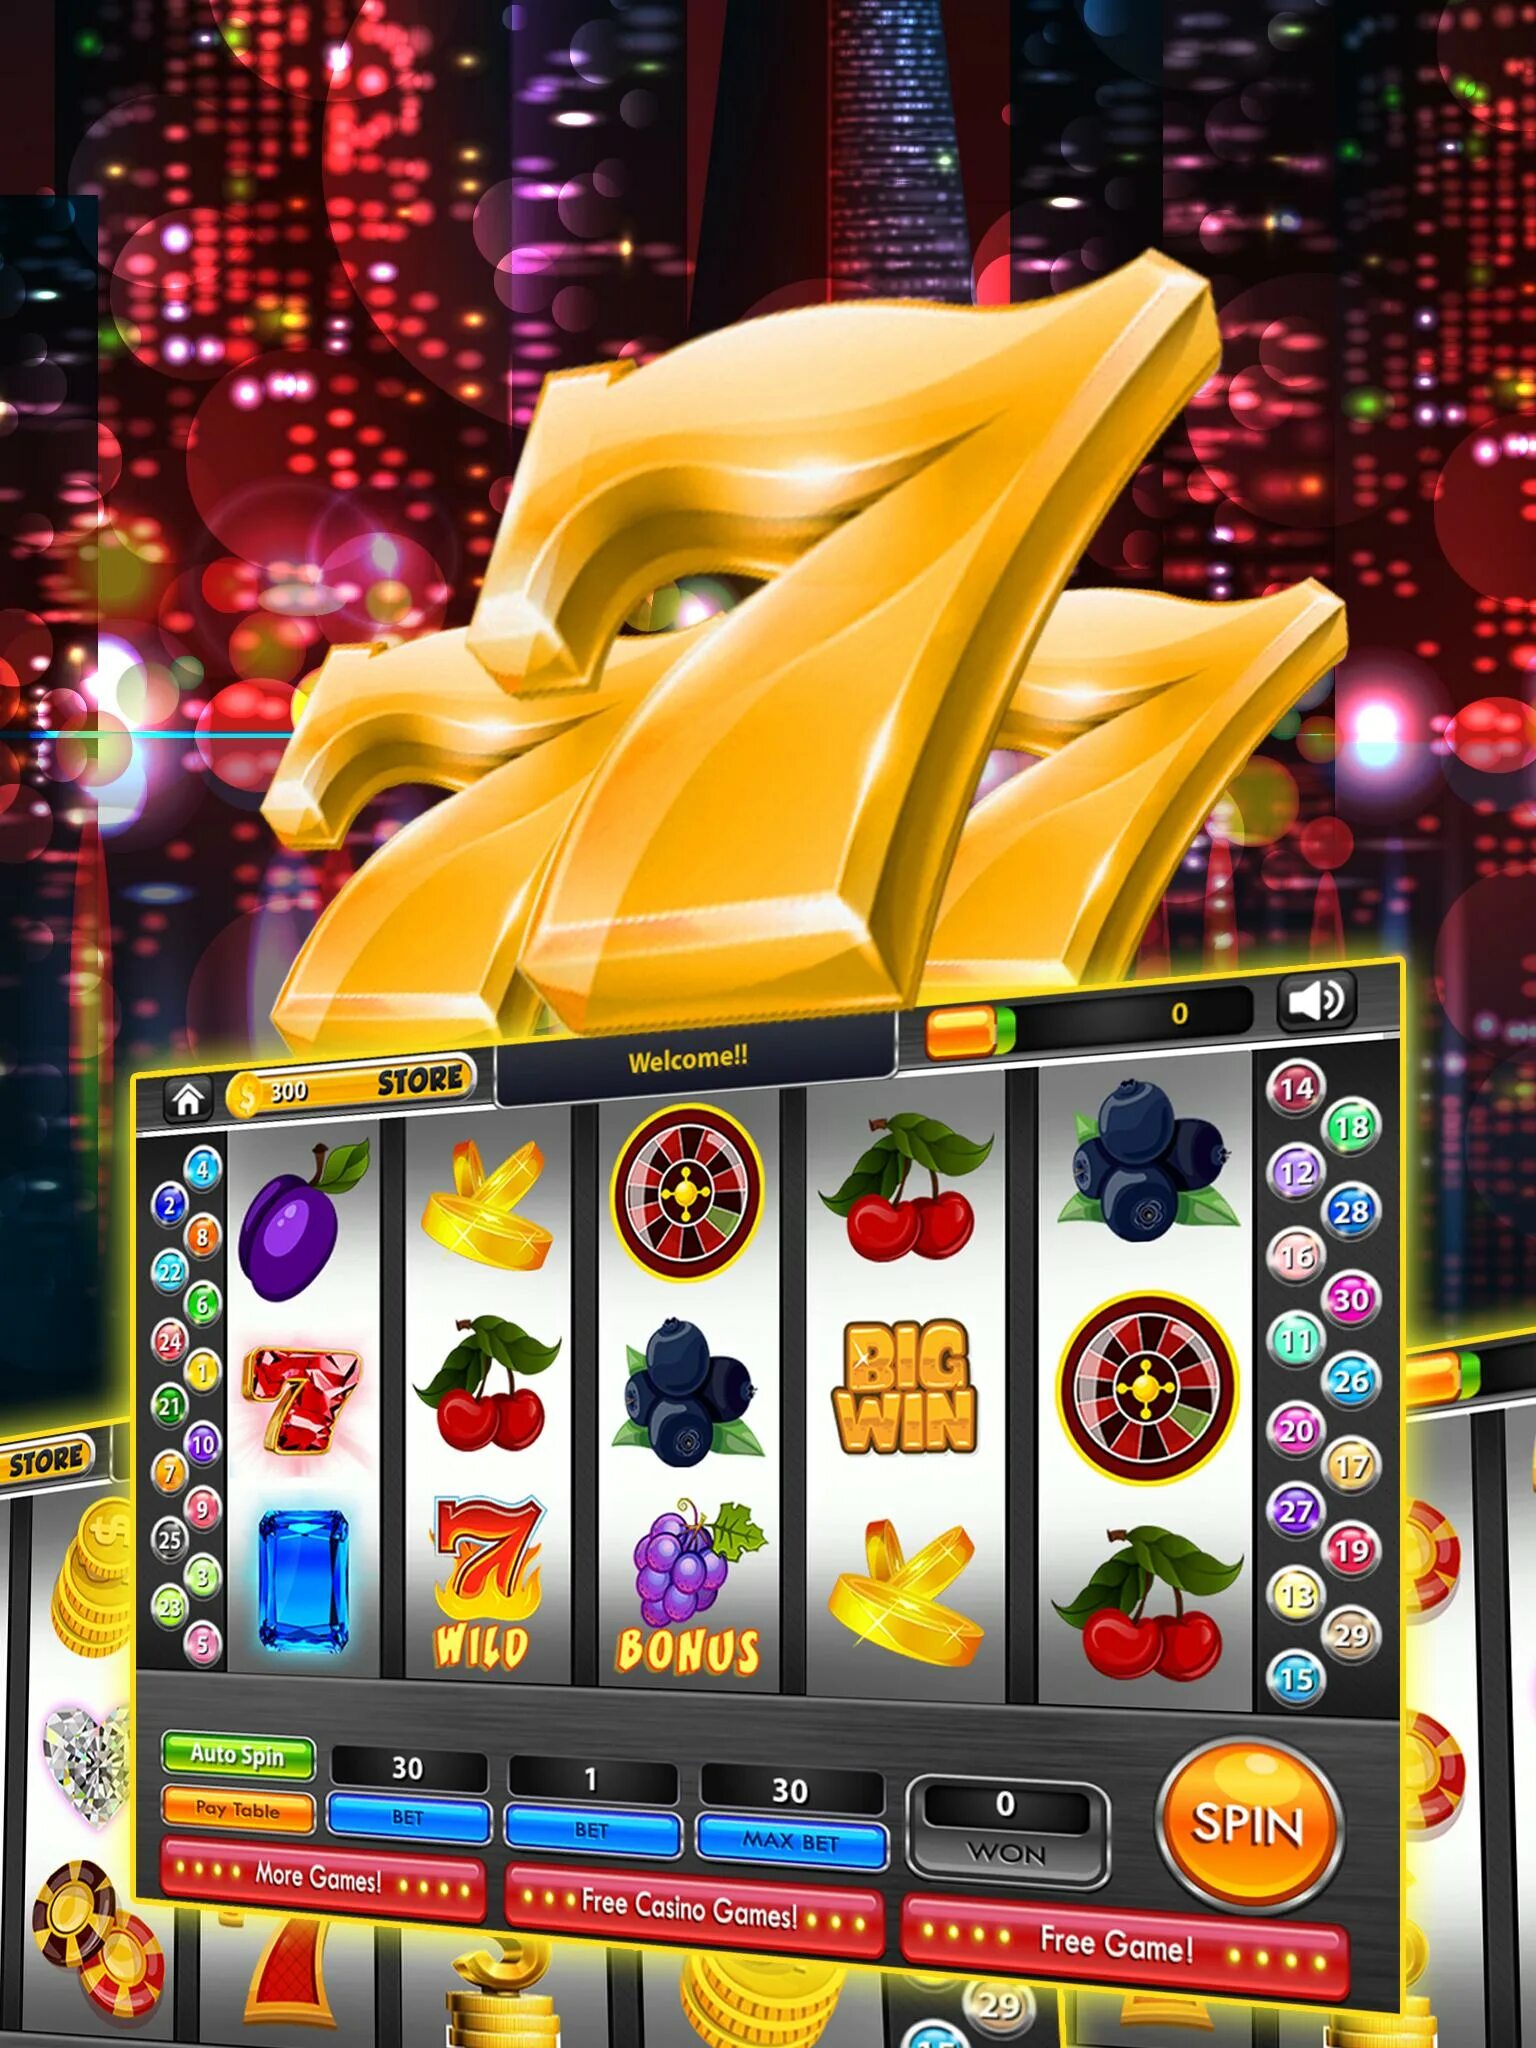 Casino игра на деньги на андроид. Игровые автоматы слоты 777. 777 Слотс автоматы казино интернет. Игрушка игровой автомат казино. Игровые автоматы на реальные деньги.